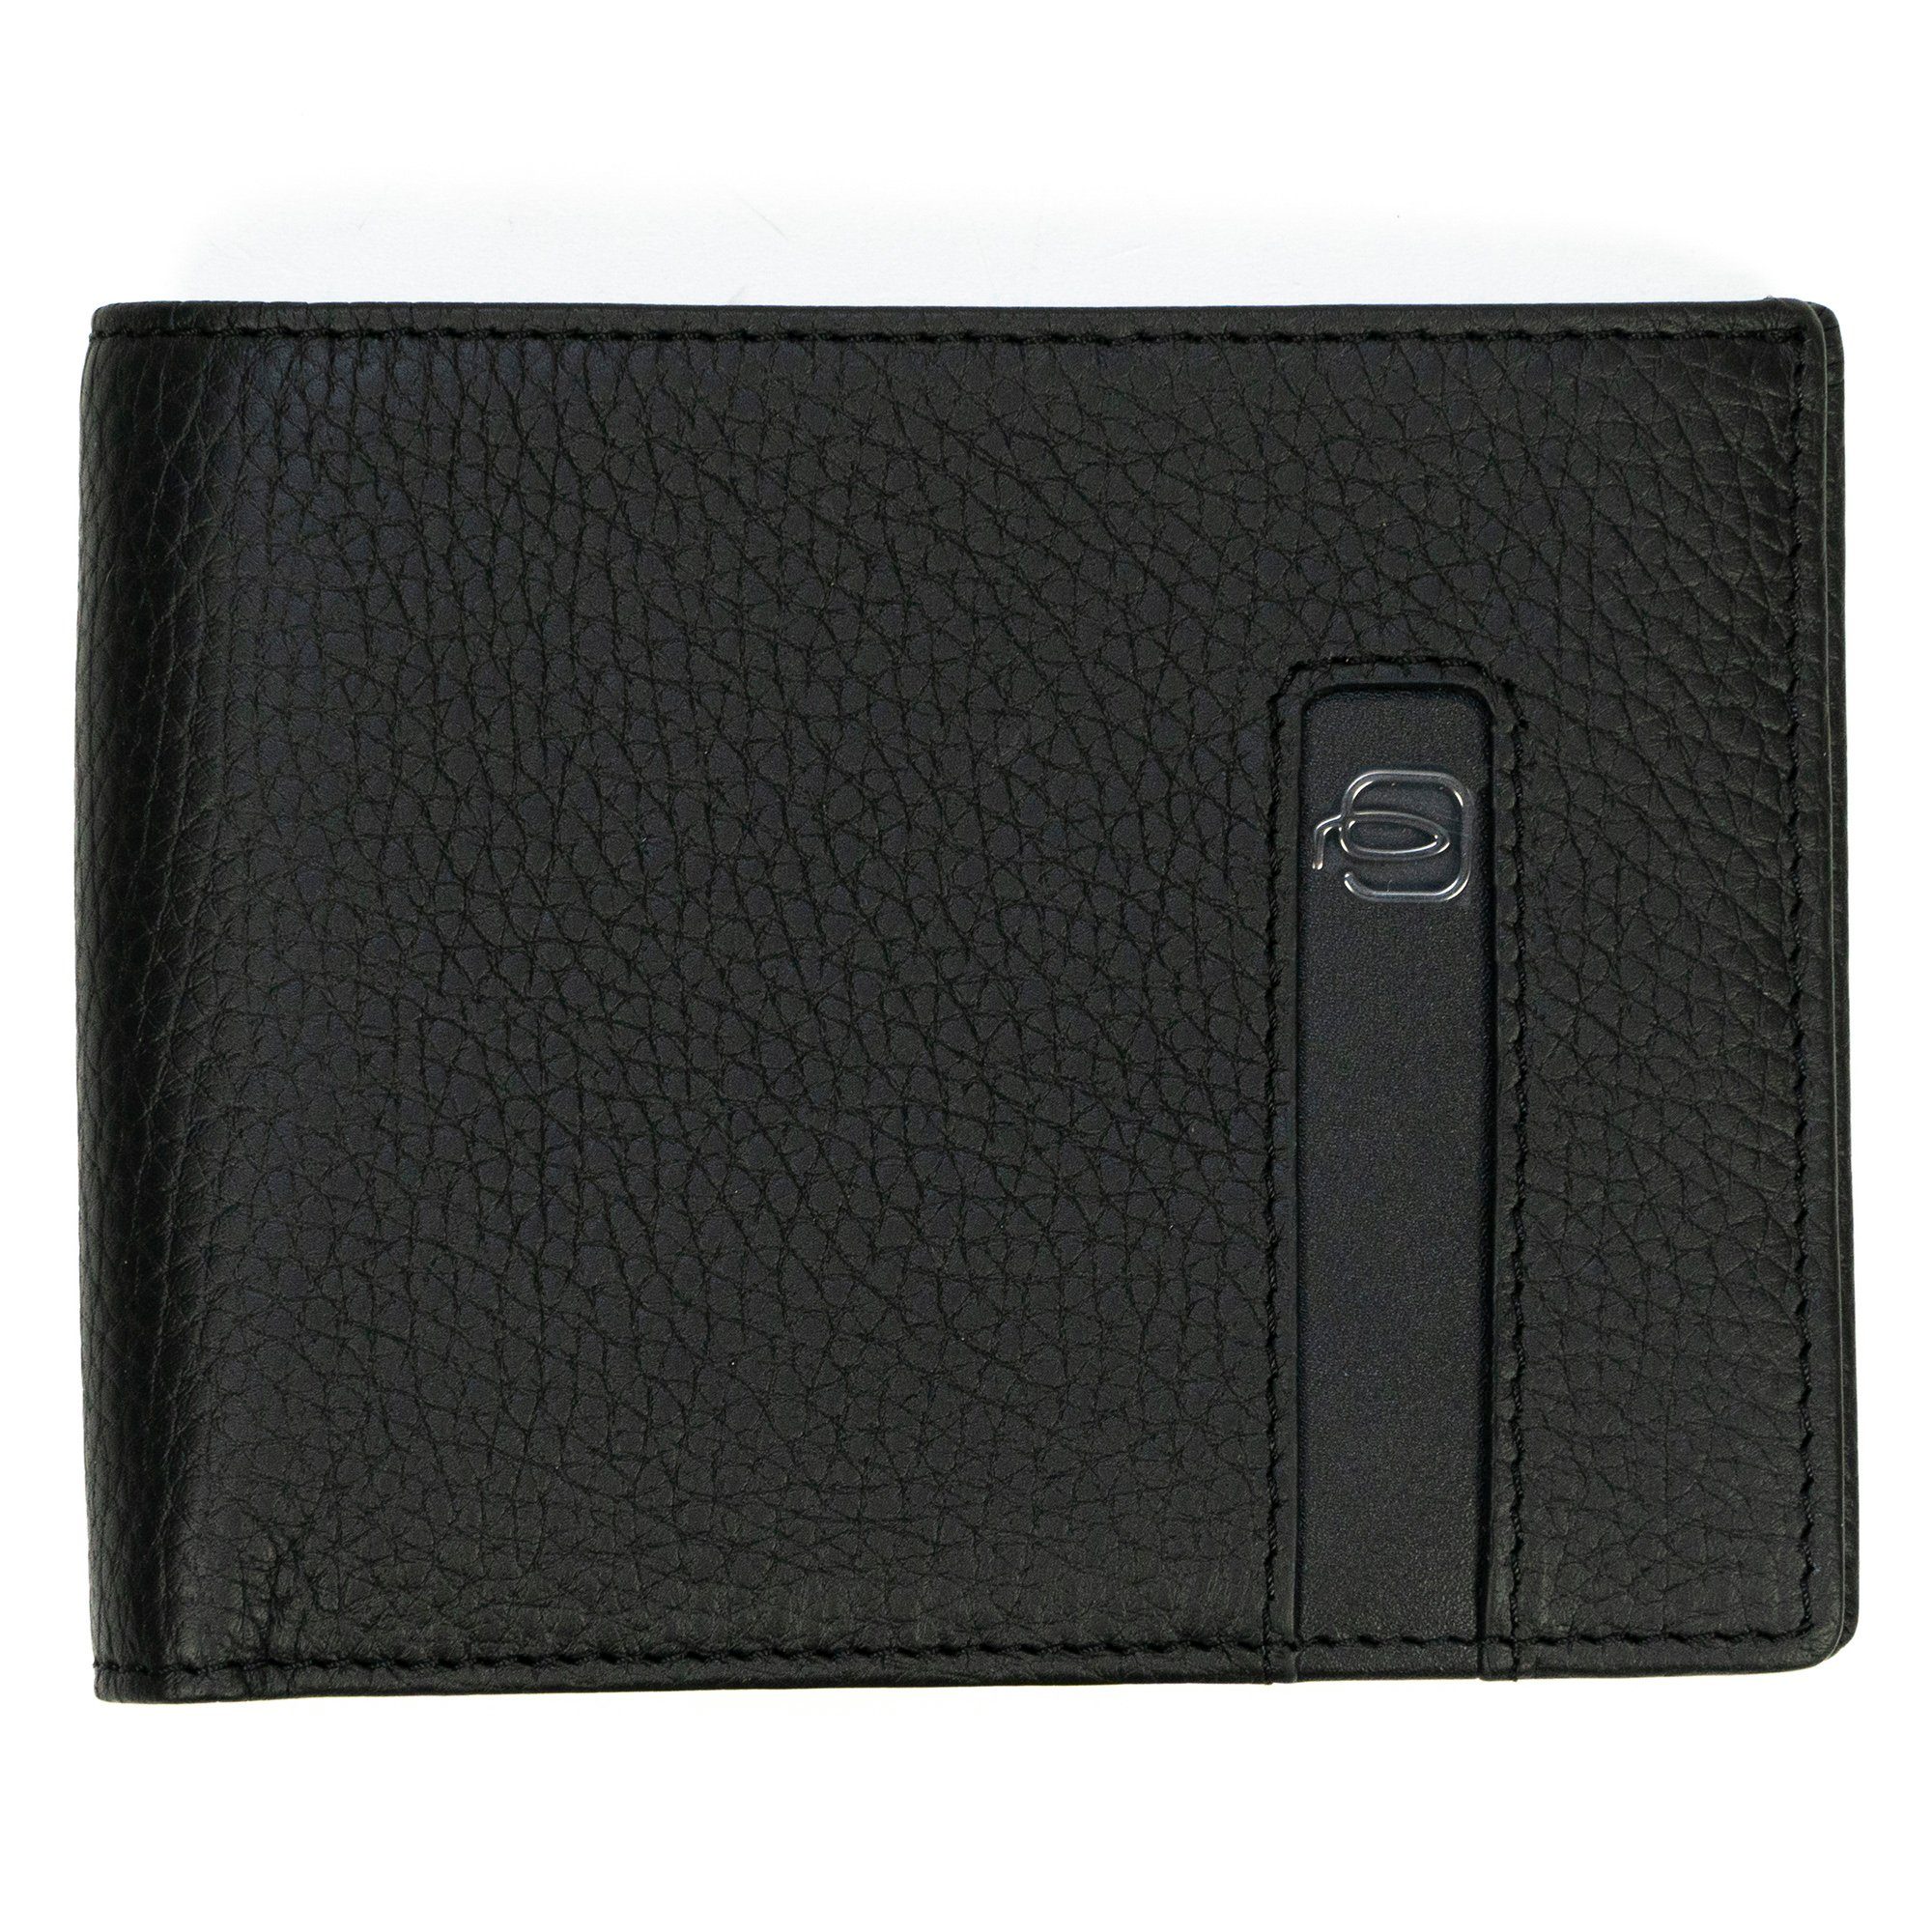 Sie können ganz einfach nach Produkten suchen. Piquadro Brieftasche Herren Kartenschutz, Schwarz RFID PU1241S86